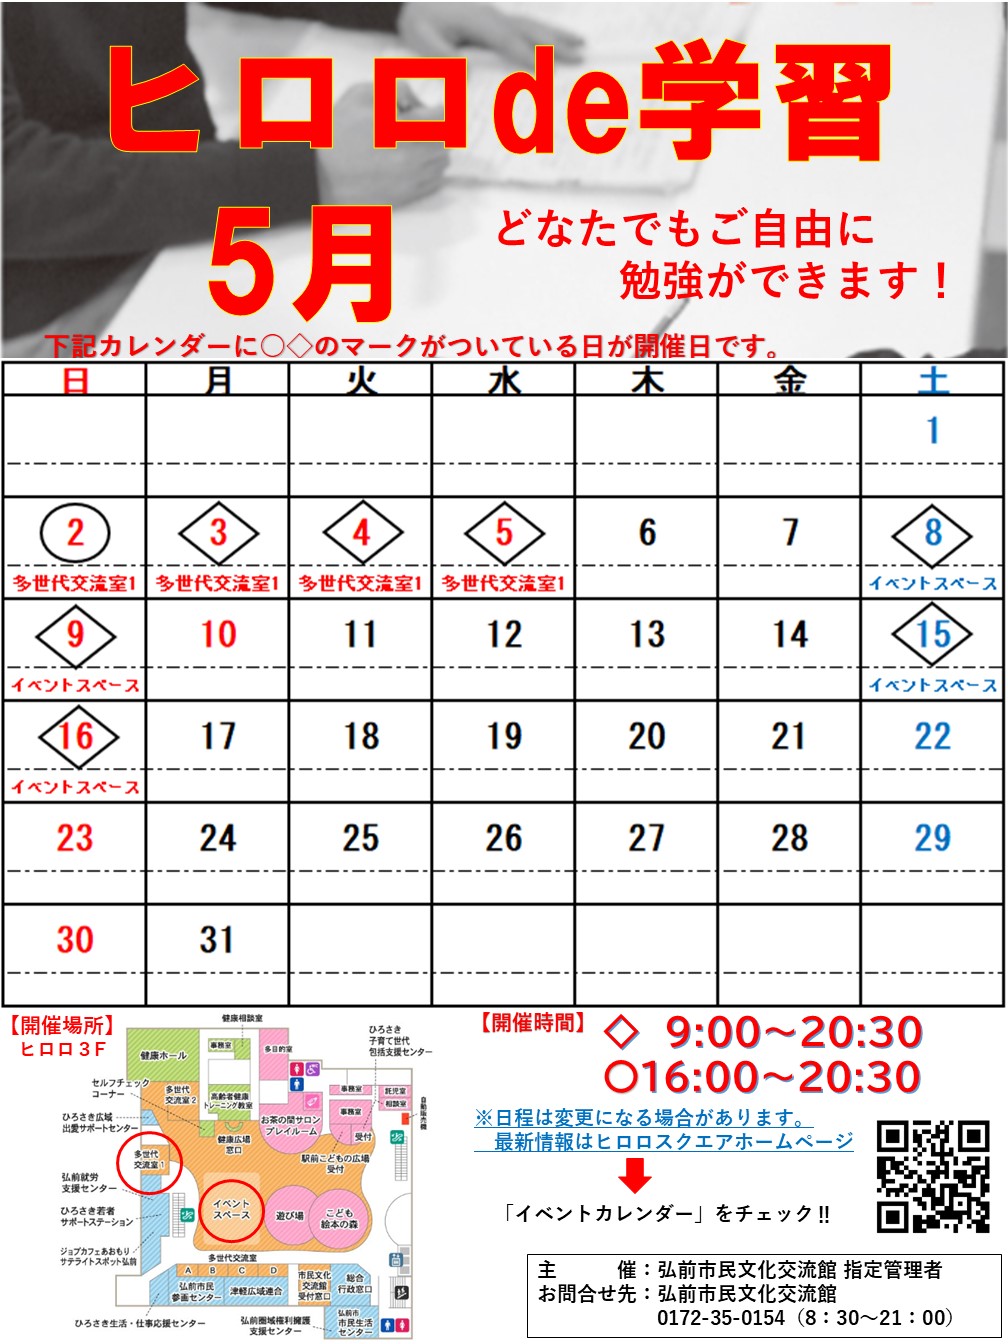 ヒロロde学習 イベントカレンダー 弘前駅前公共施設 ヒロロスクエア